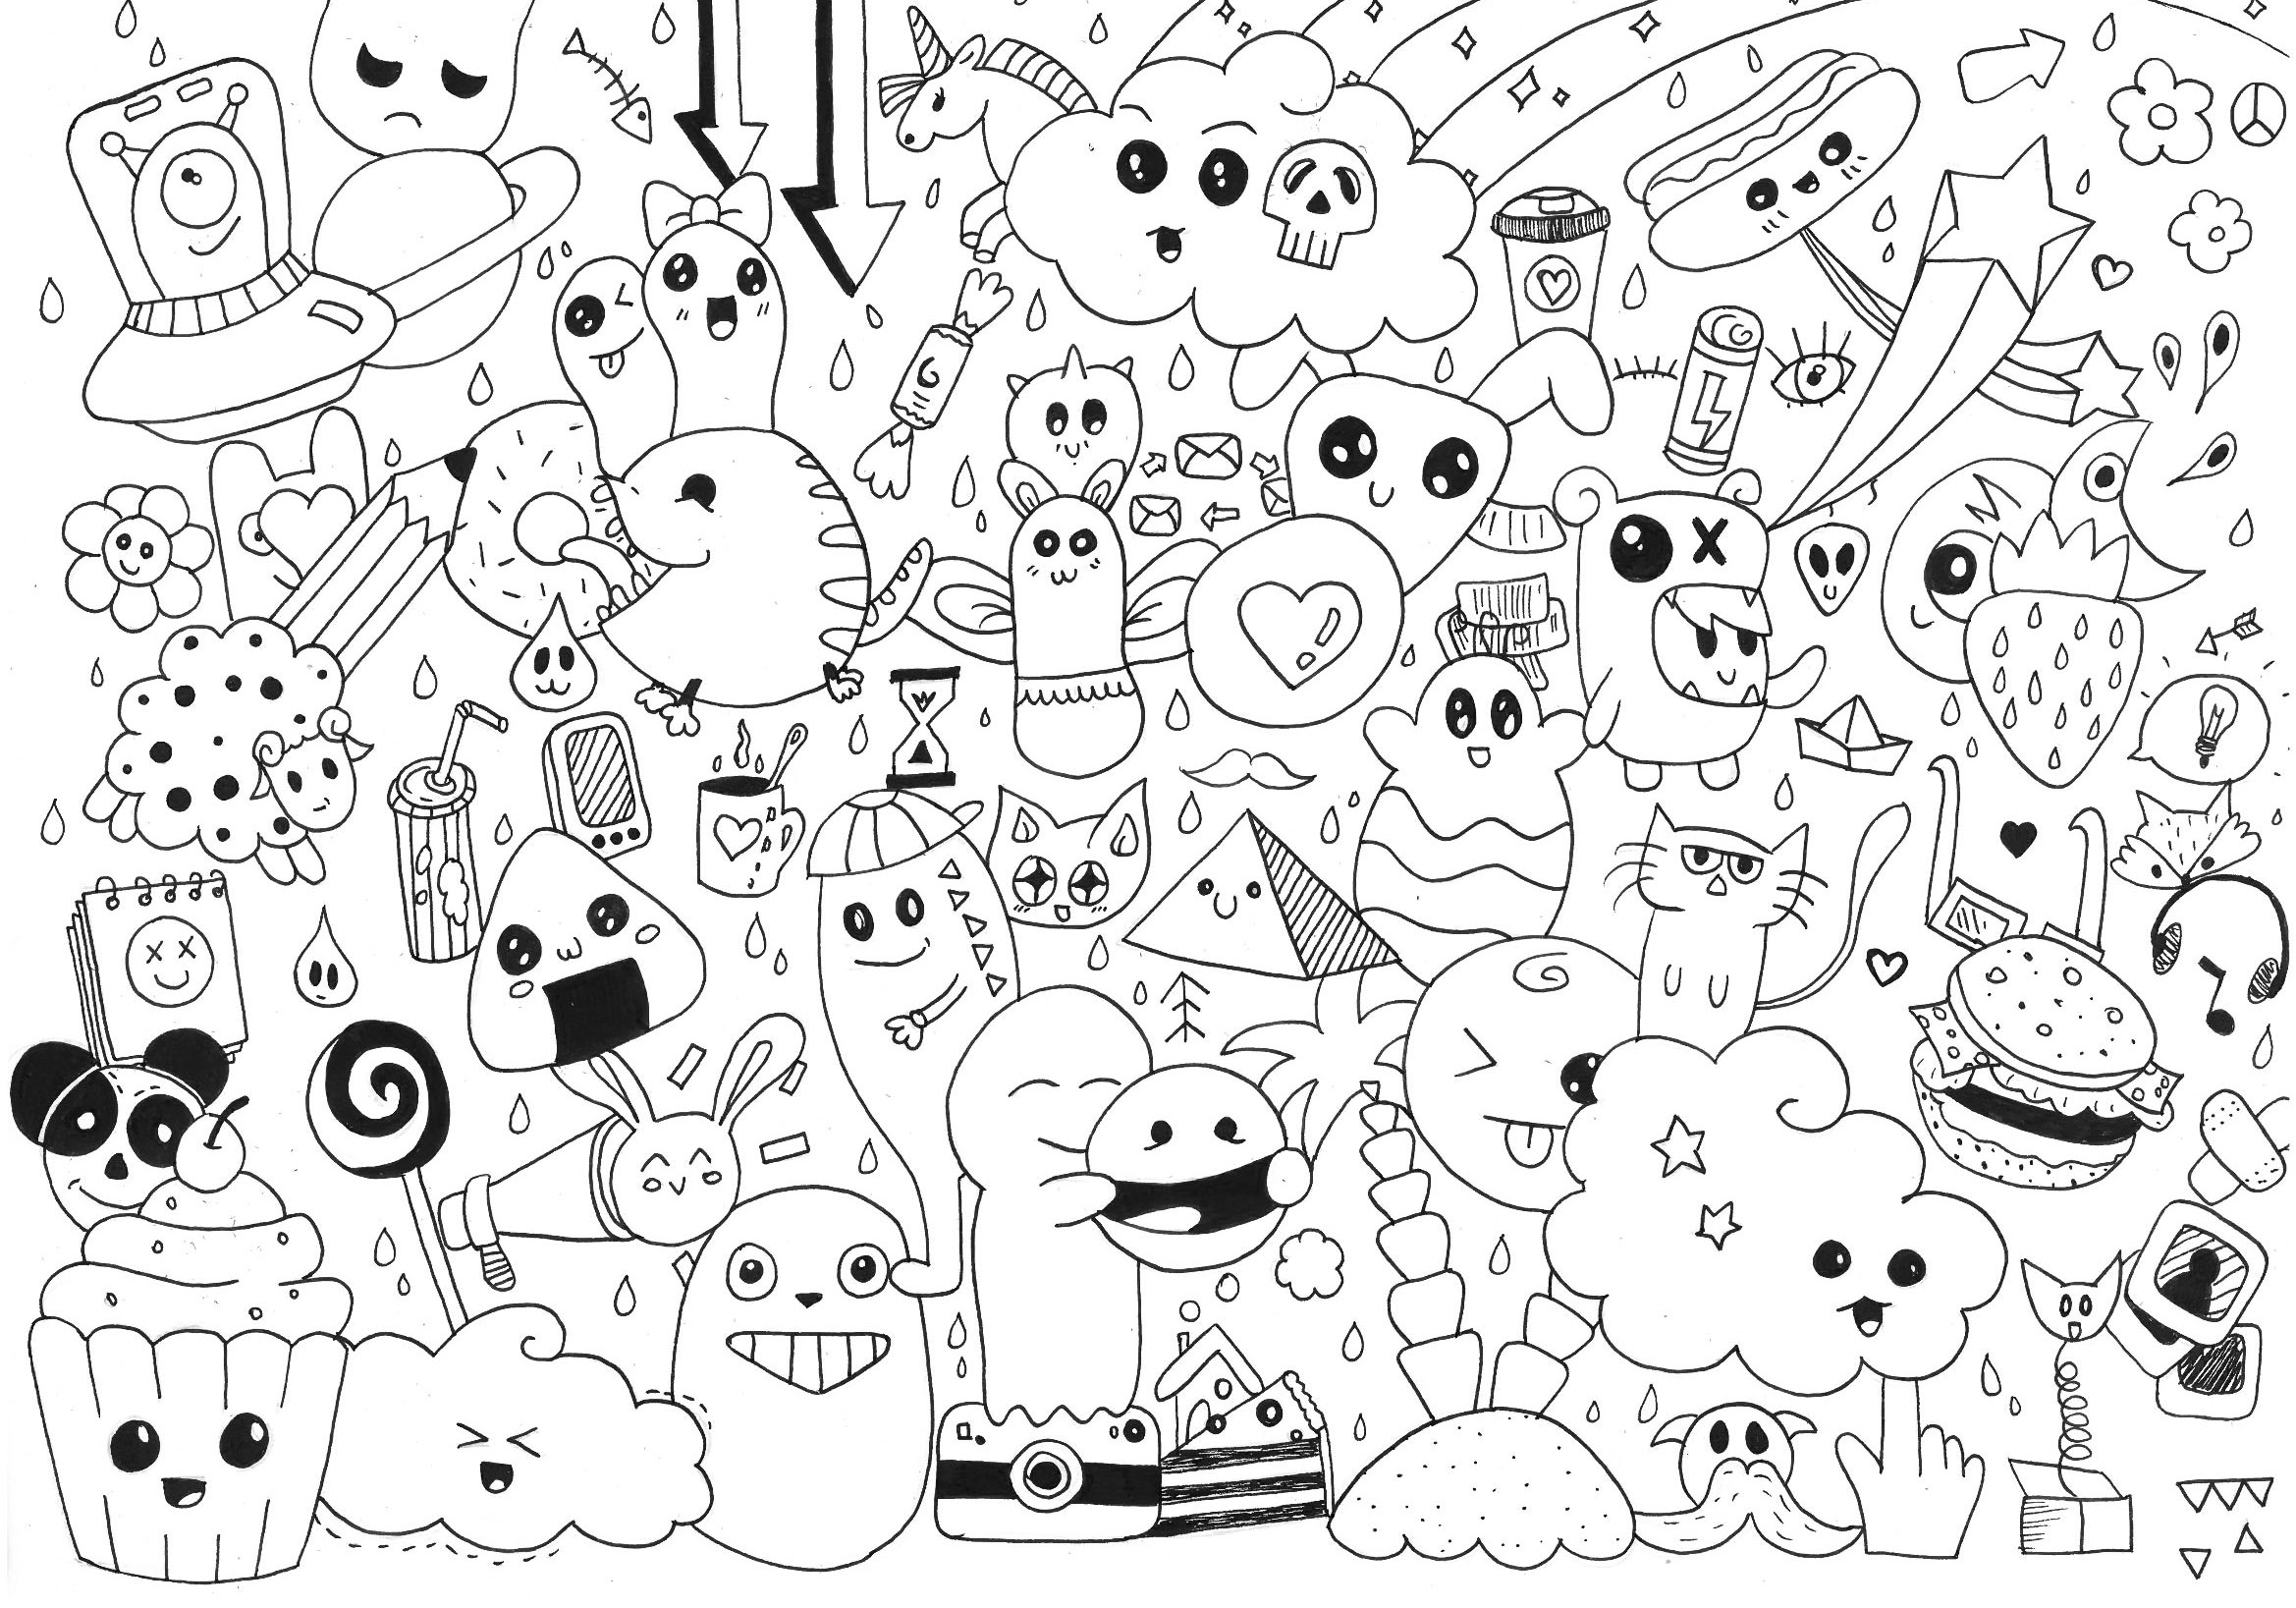 doodle-rachel-doodle-art-doodling-adult-coloring-pages